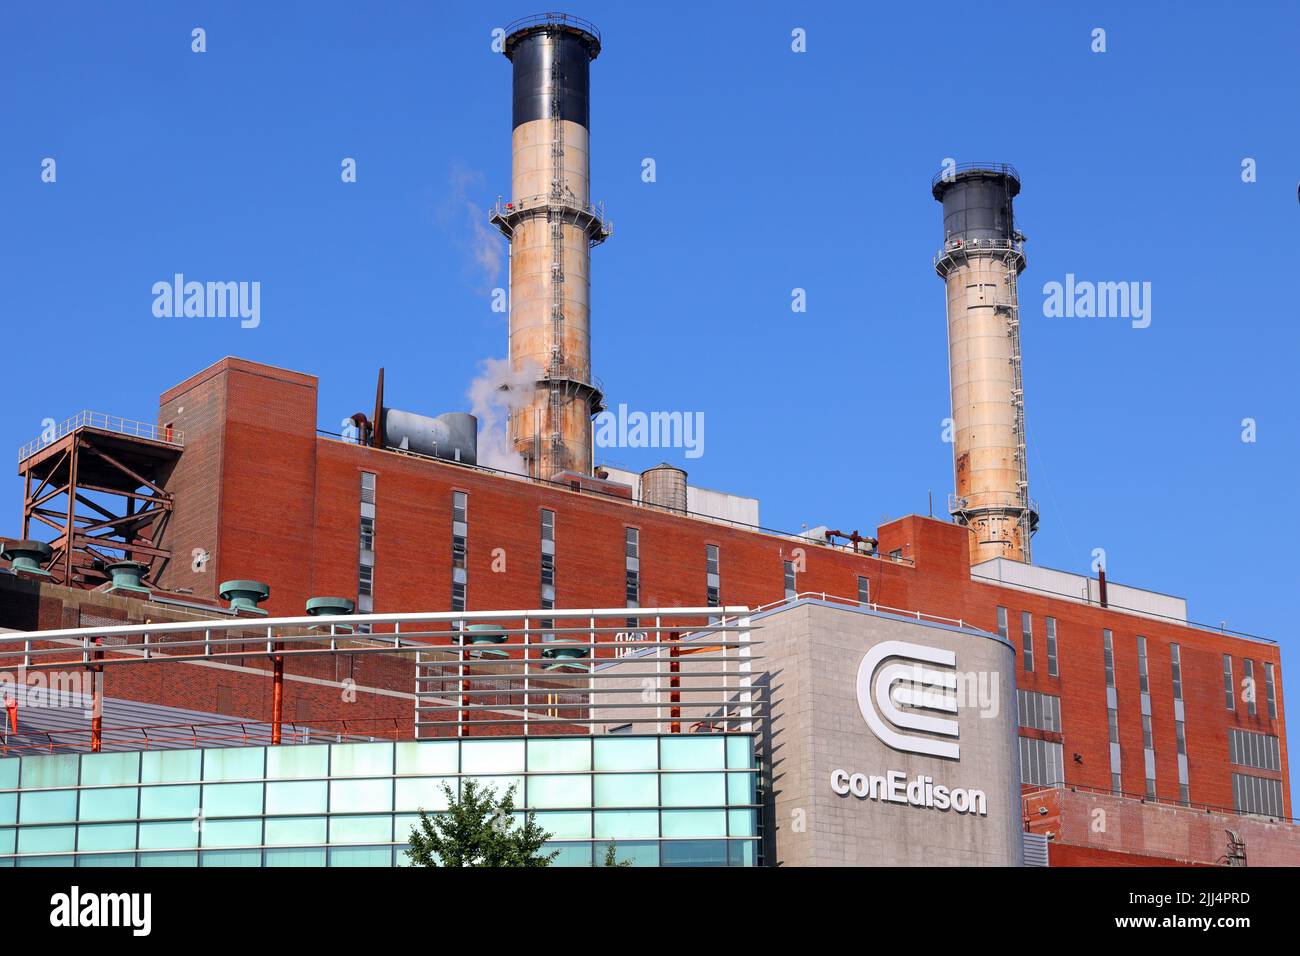 Die Con Edison East River Generating Station mit zwei Stahlstapeln vor einem sonnigen Himmel. Con Ed, Consolidated Edison in Manhattan, New York. Stockfoto